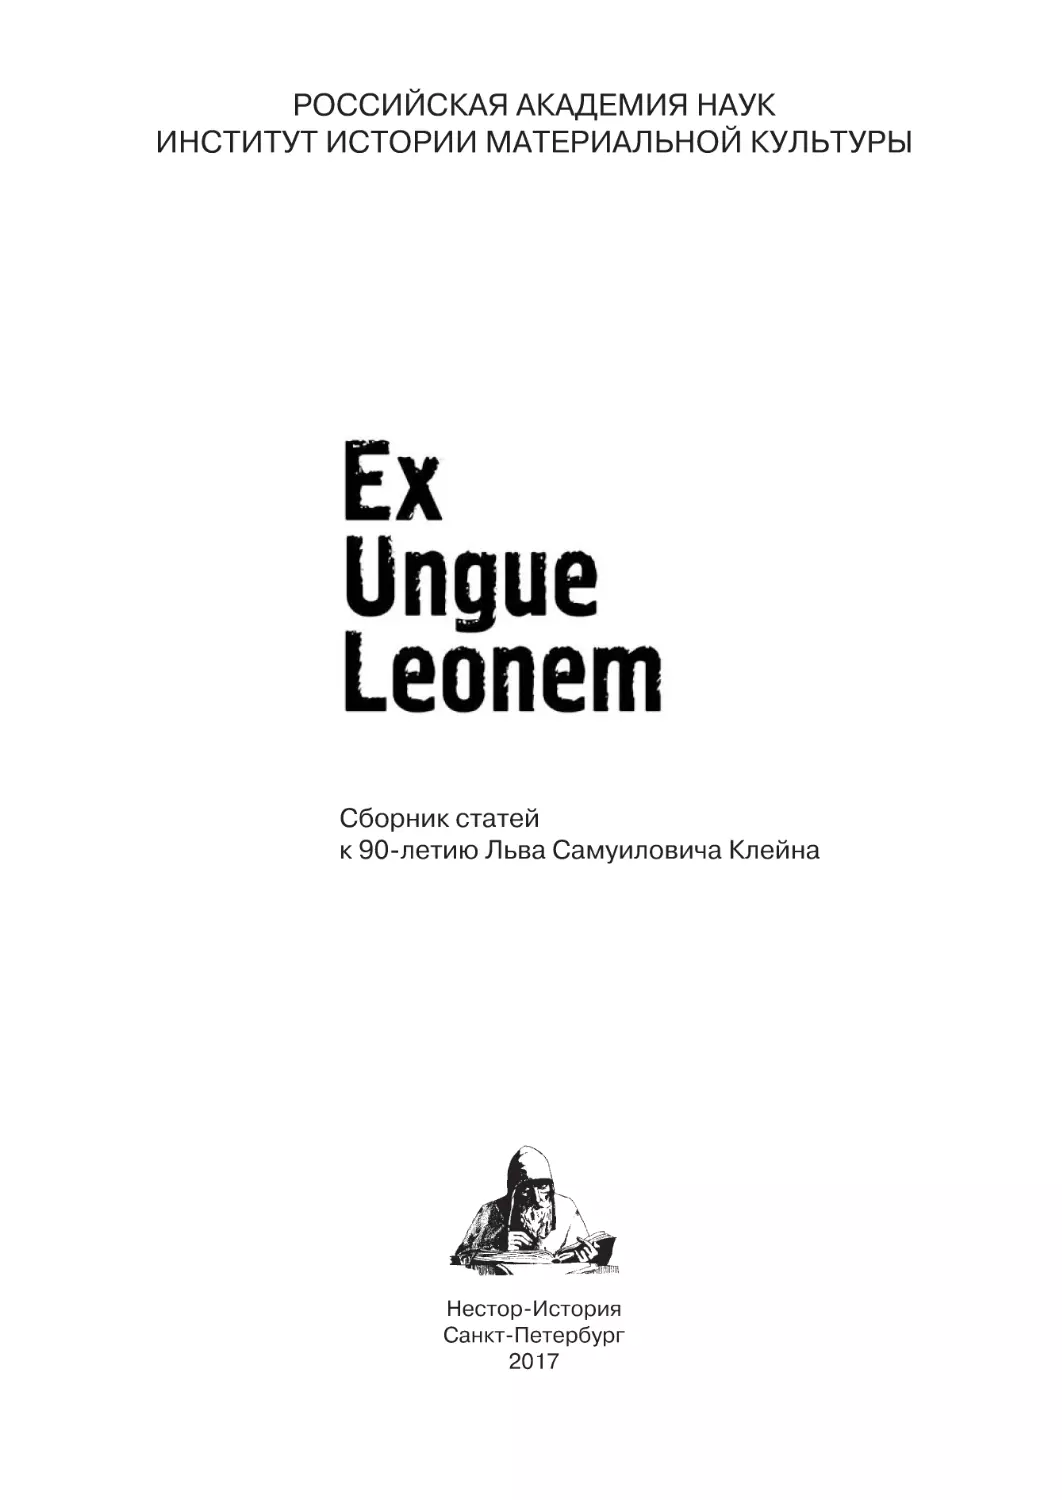 Ex Ungue Leonem_New